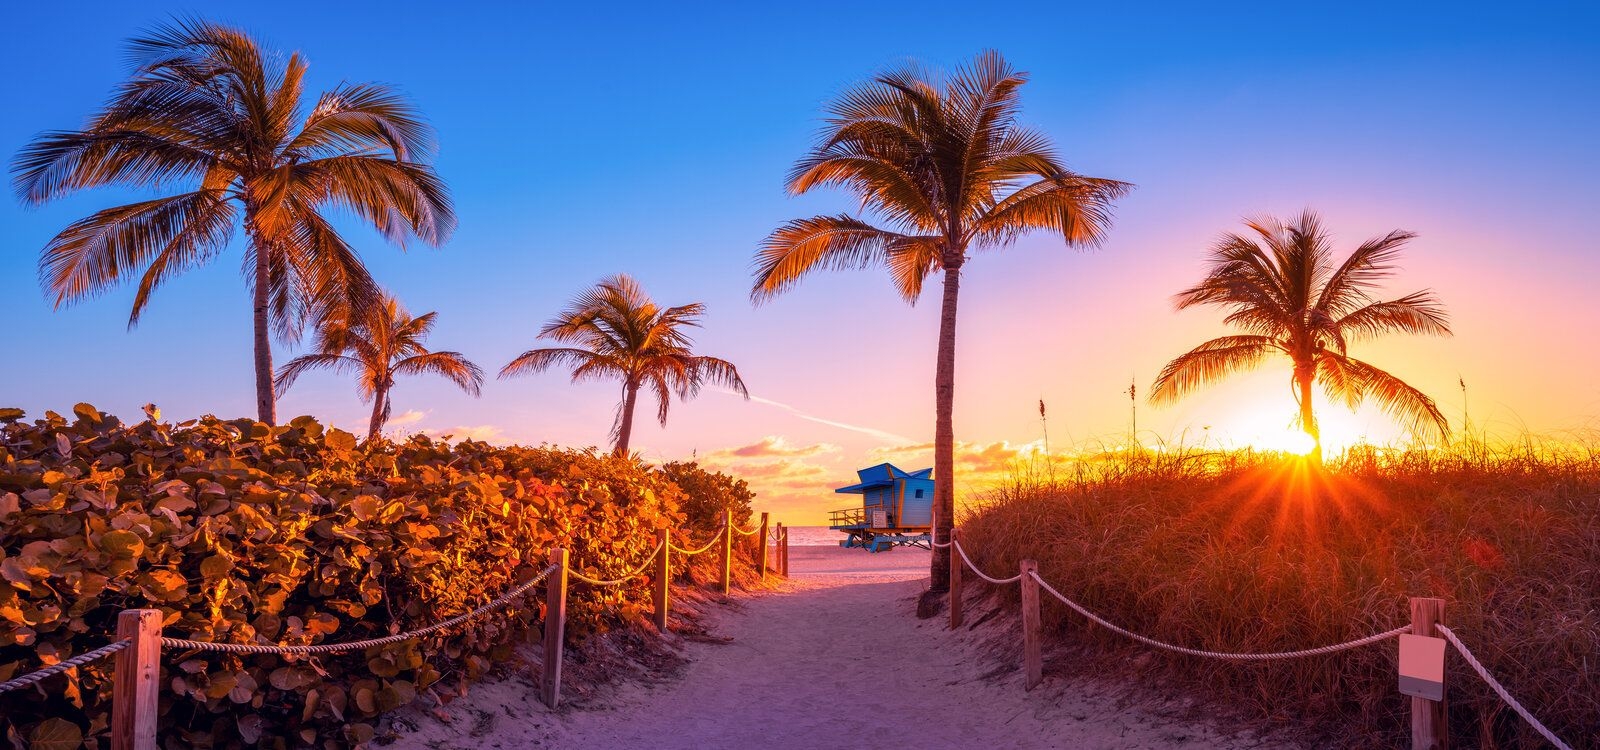 Scenic sunrise over Miami beach